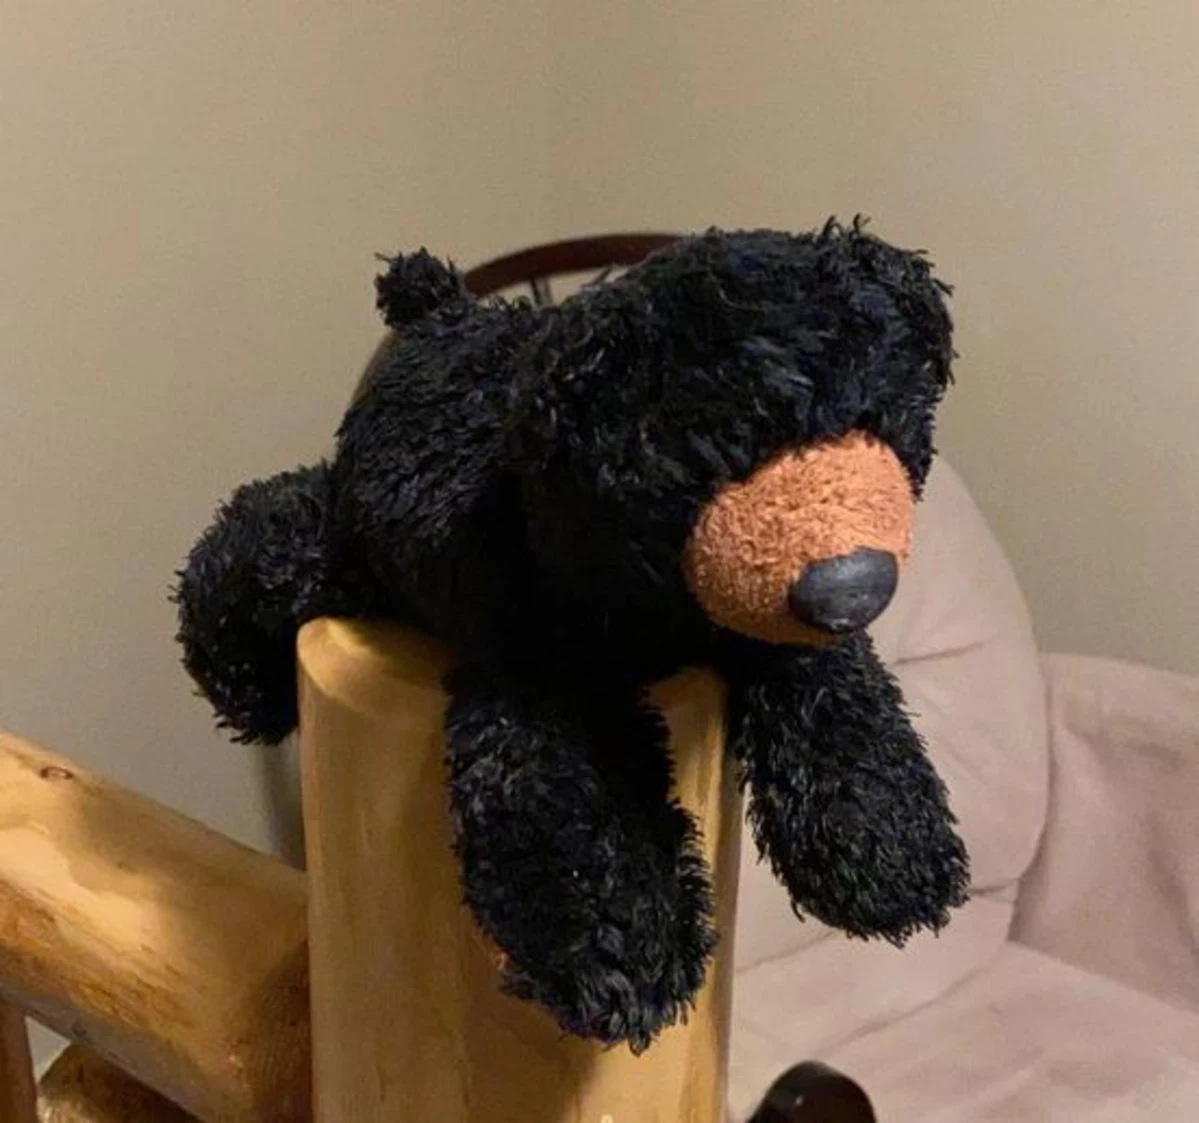 Little Boy's Stuffed Bear Has Been Found [UPDATE]